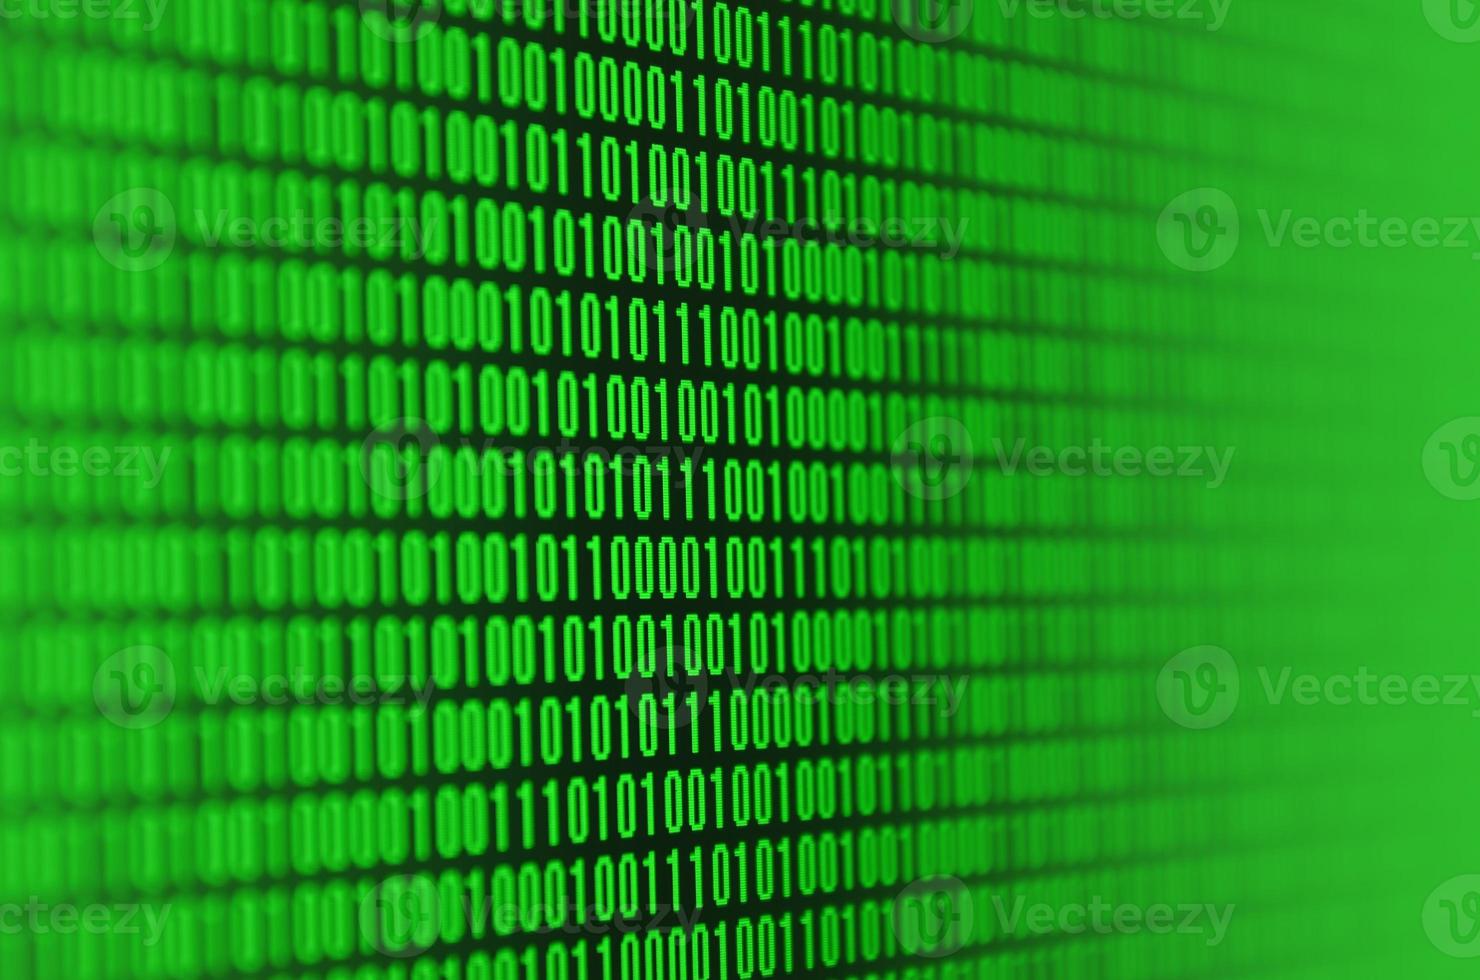 uma imagem de um código binário composto por um conjunto de dígitos verdes em um fundo preto foto